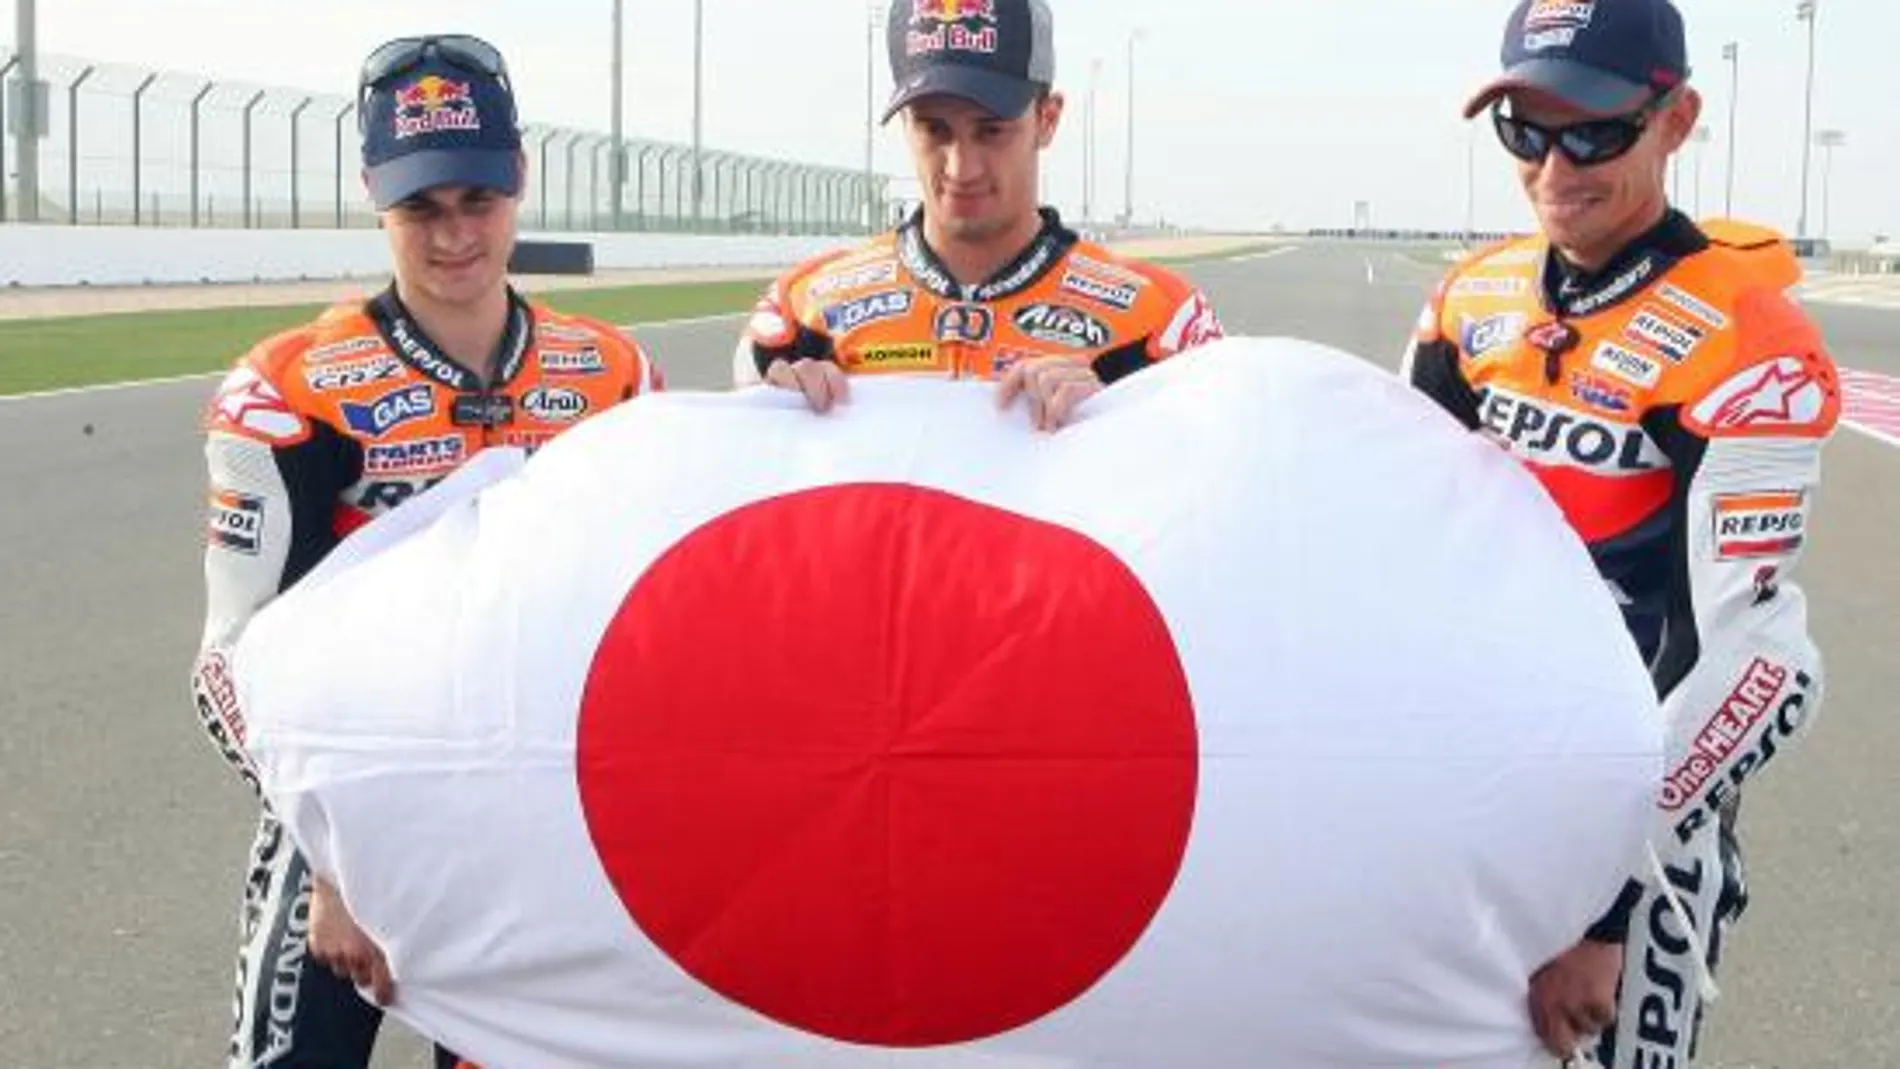 Pedrosa, Dovicioso y Stoner, los tres pilotos Honda, en un acto solidario con las víctimas del terremoto de Japón